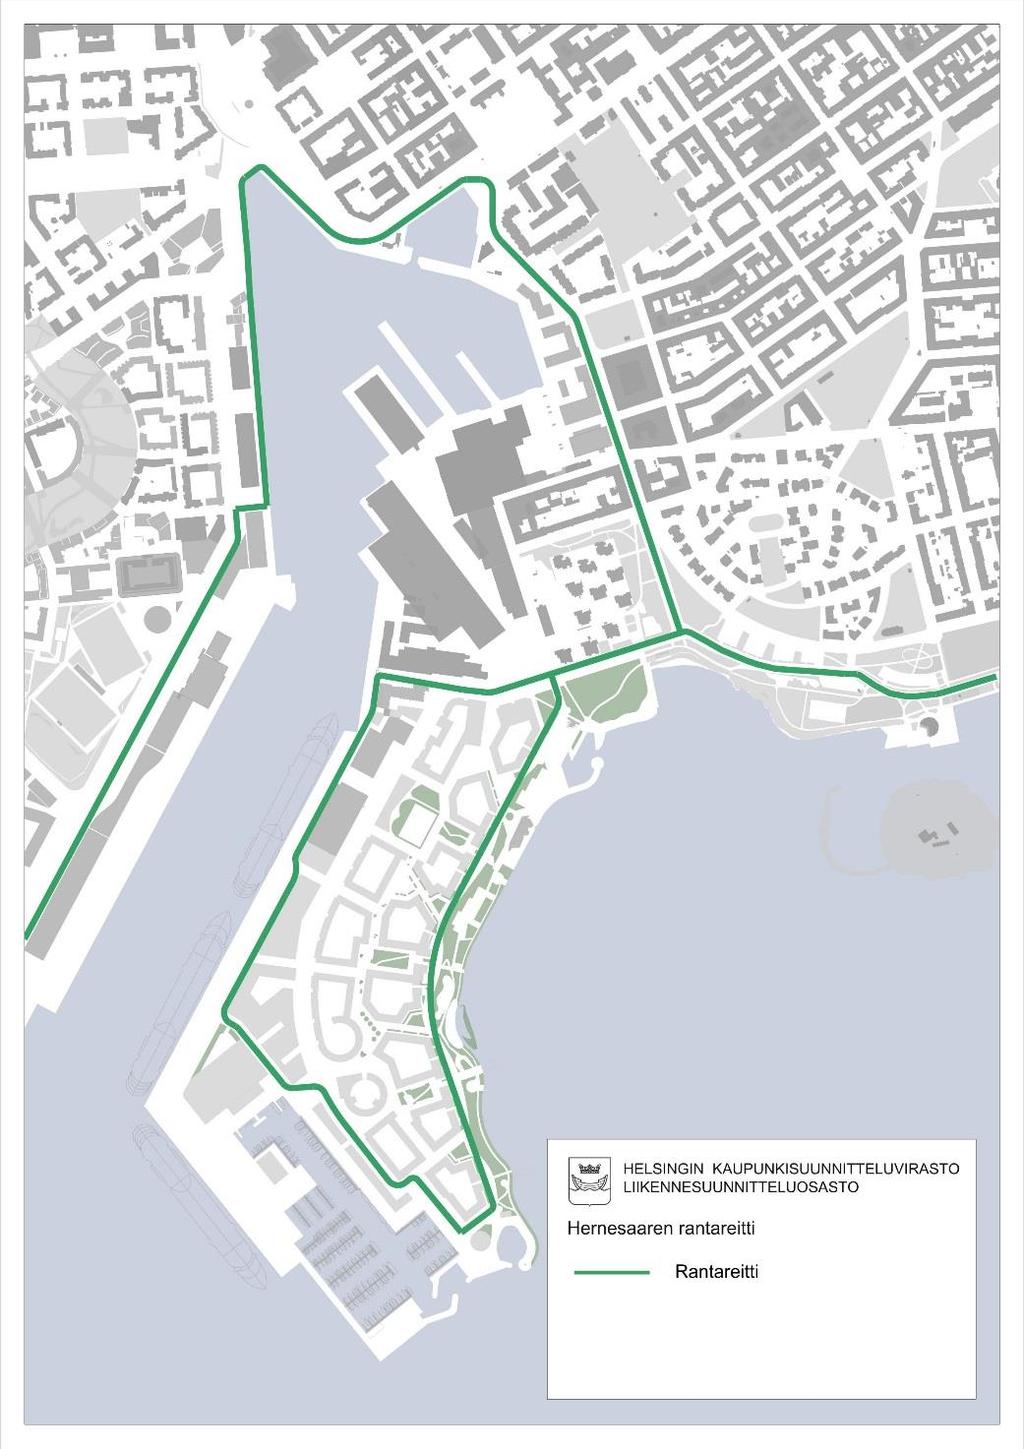 5 Liikennejärjestelmän tavoitetilanne Alueen joukkoliikenneratkaisu perustuu raitiotieyhteyteen, joka kulkee Hernesaaresta Telakkakadun ja Bulevardin kautta keskustaan.